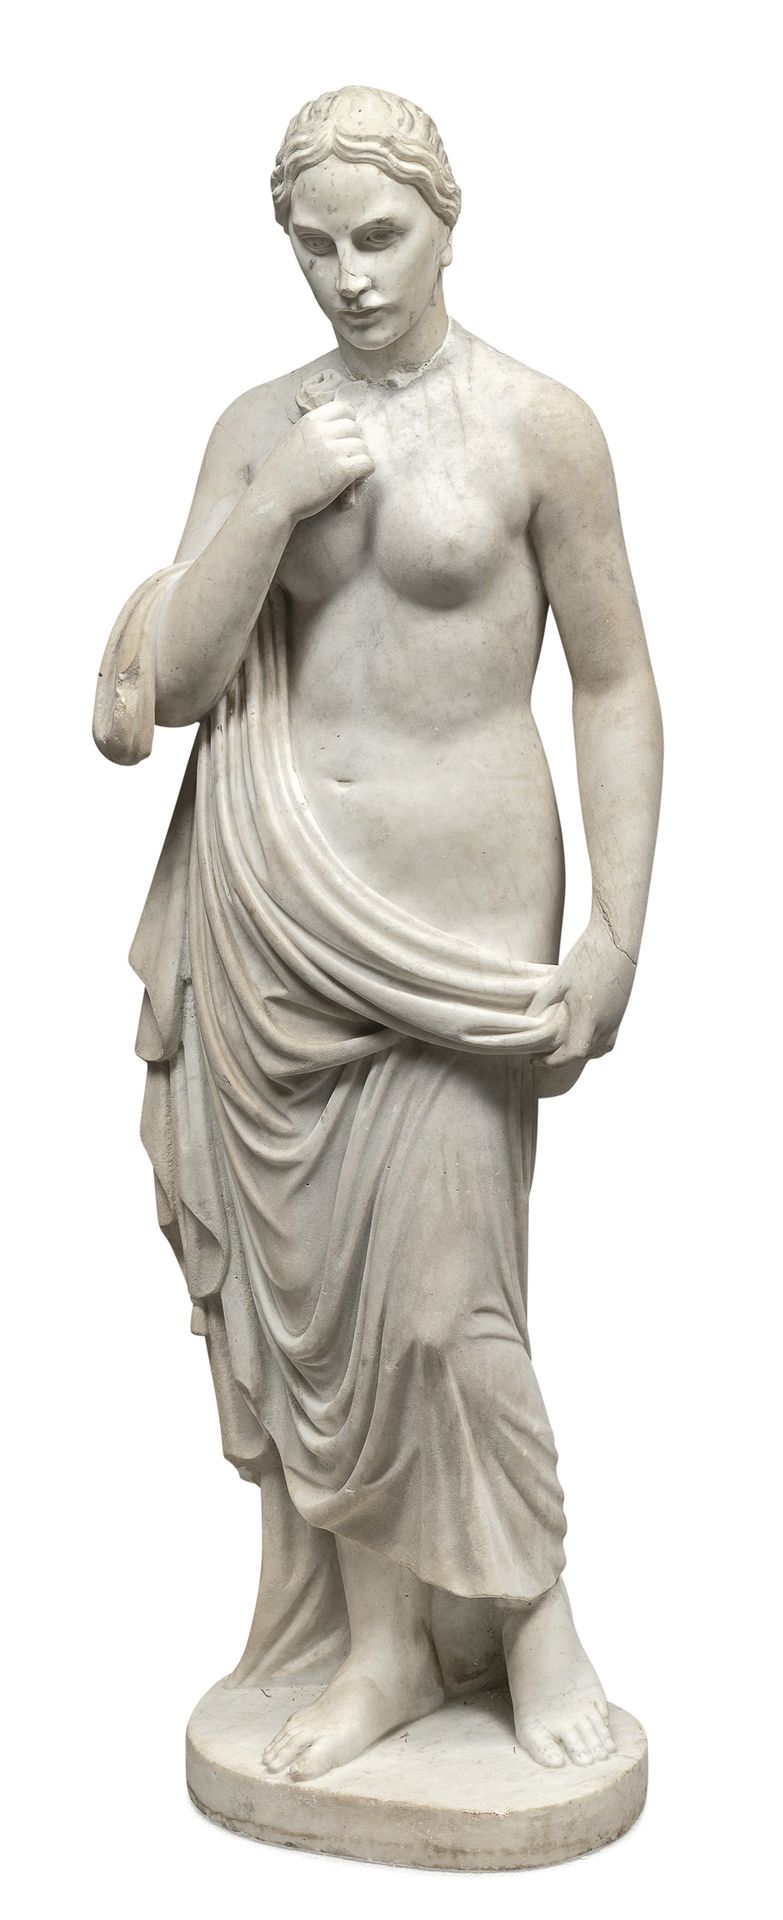 Null SCULTORE ITALIANO, XIX SECOLO



ALLEGORIA DELLA VERGINITÁ

Statua in marmo&hellip;